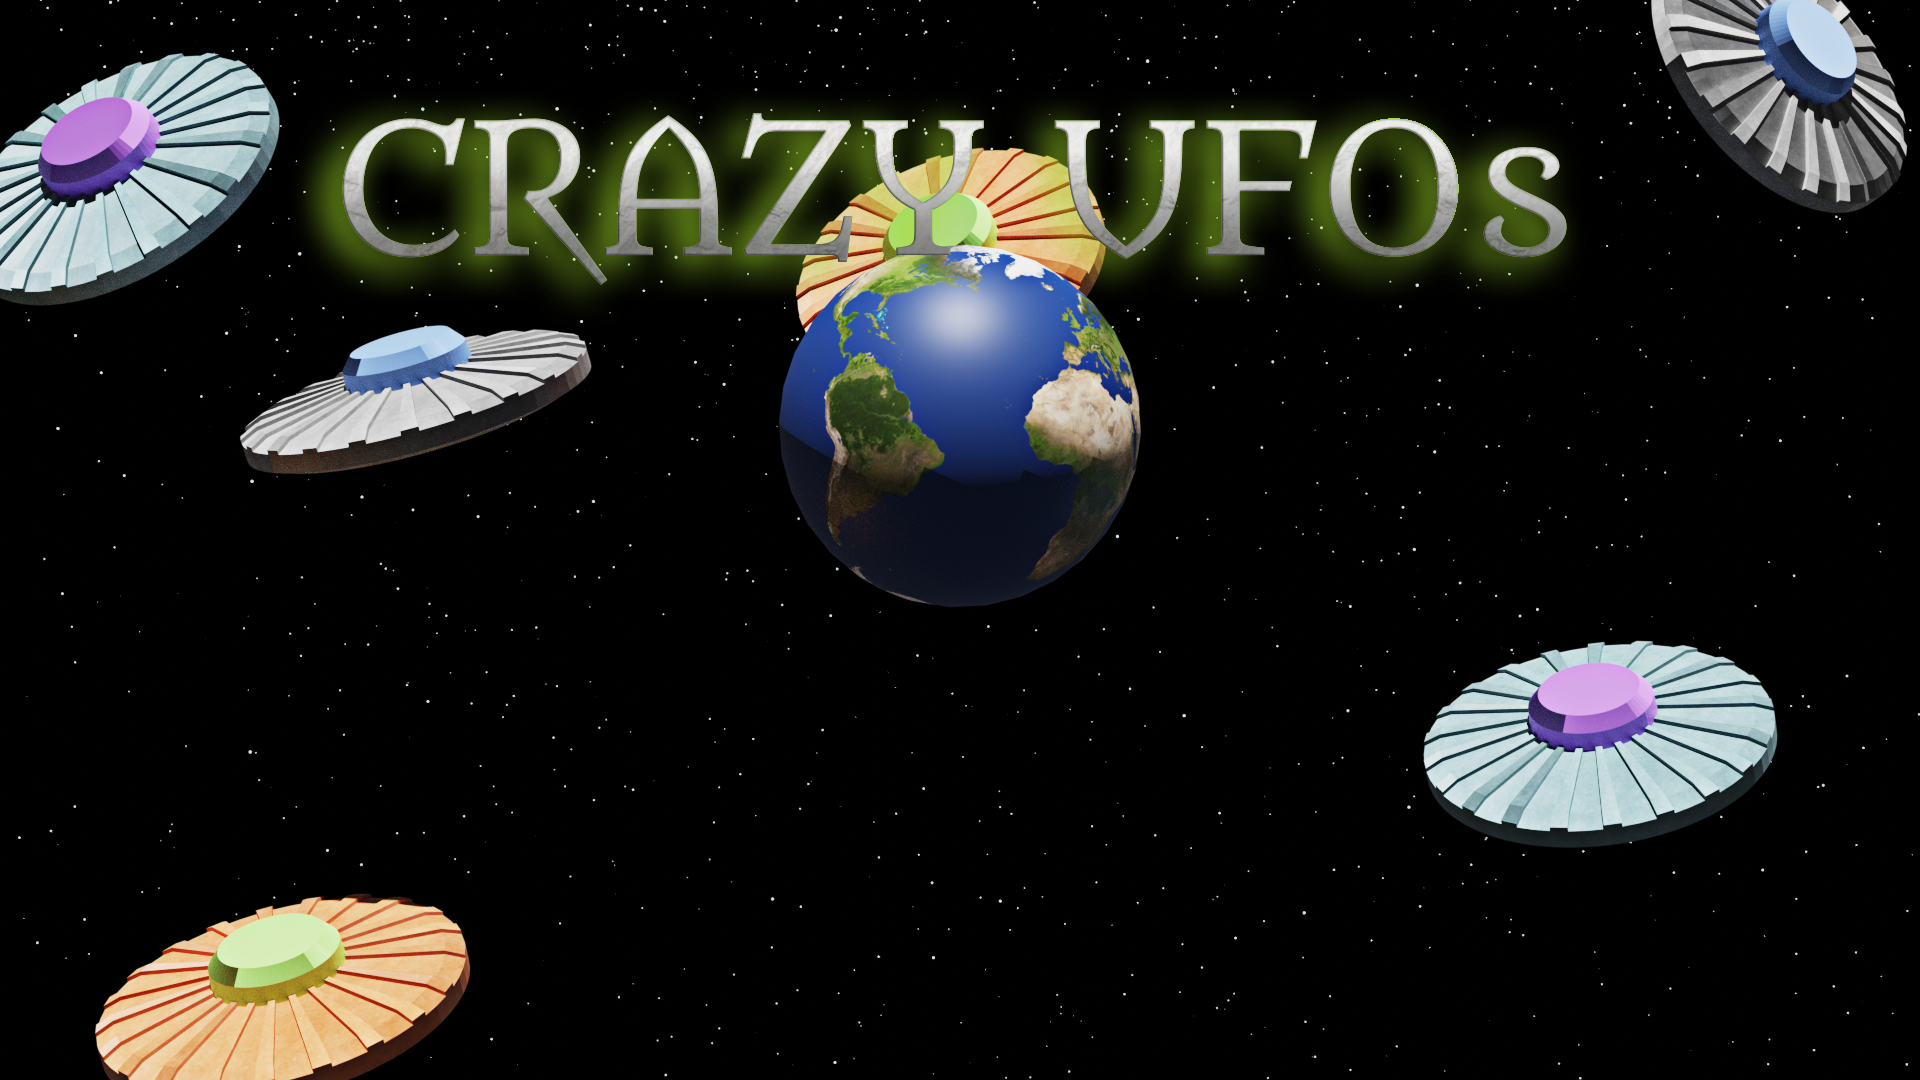 Crazy UFOs